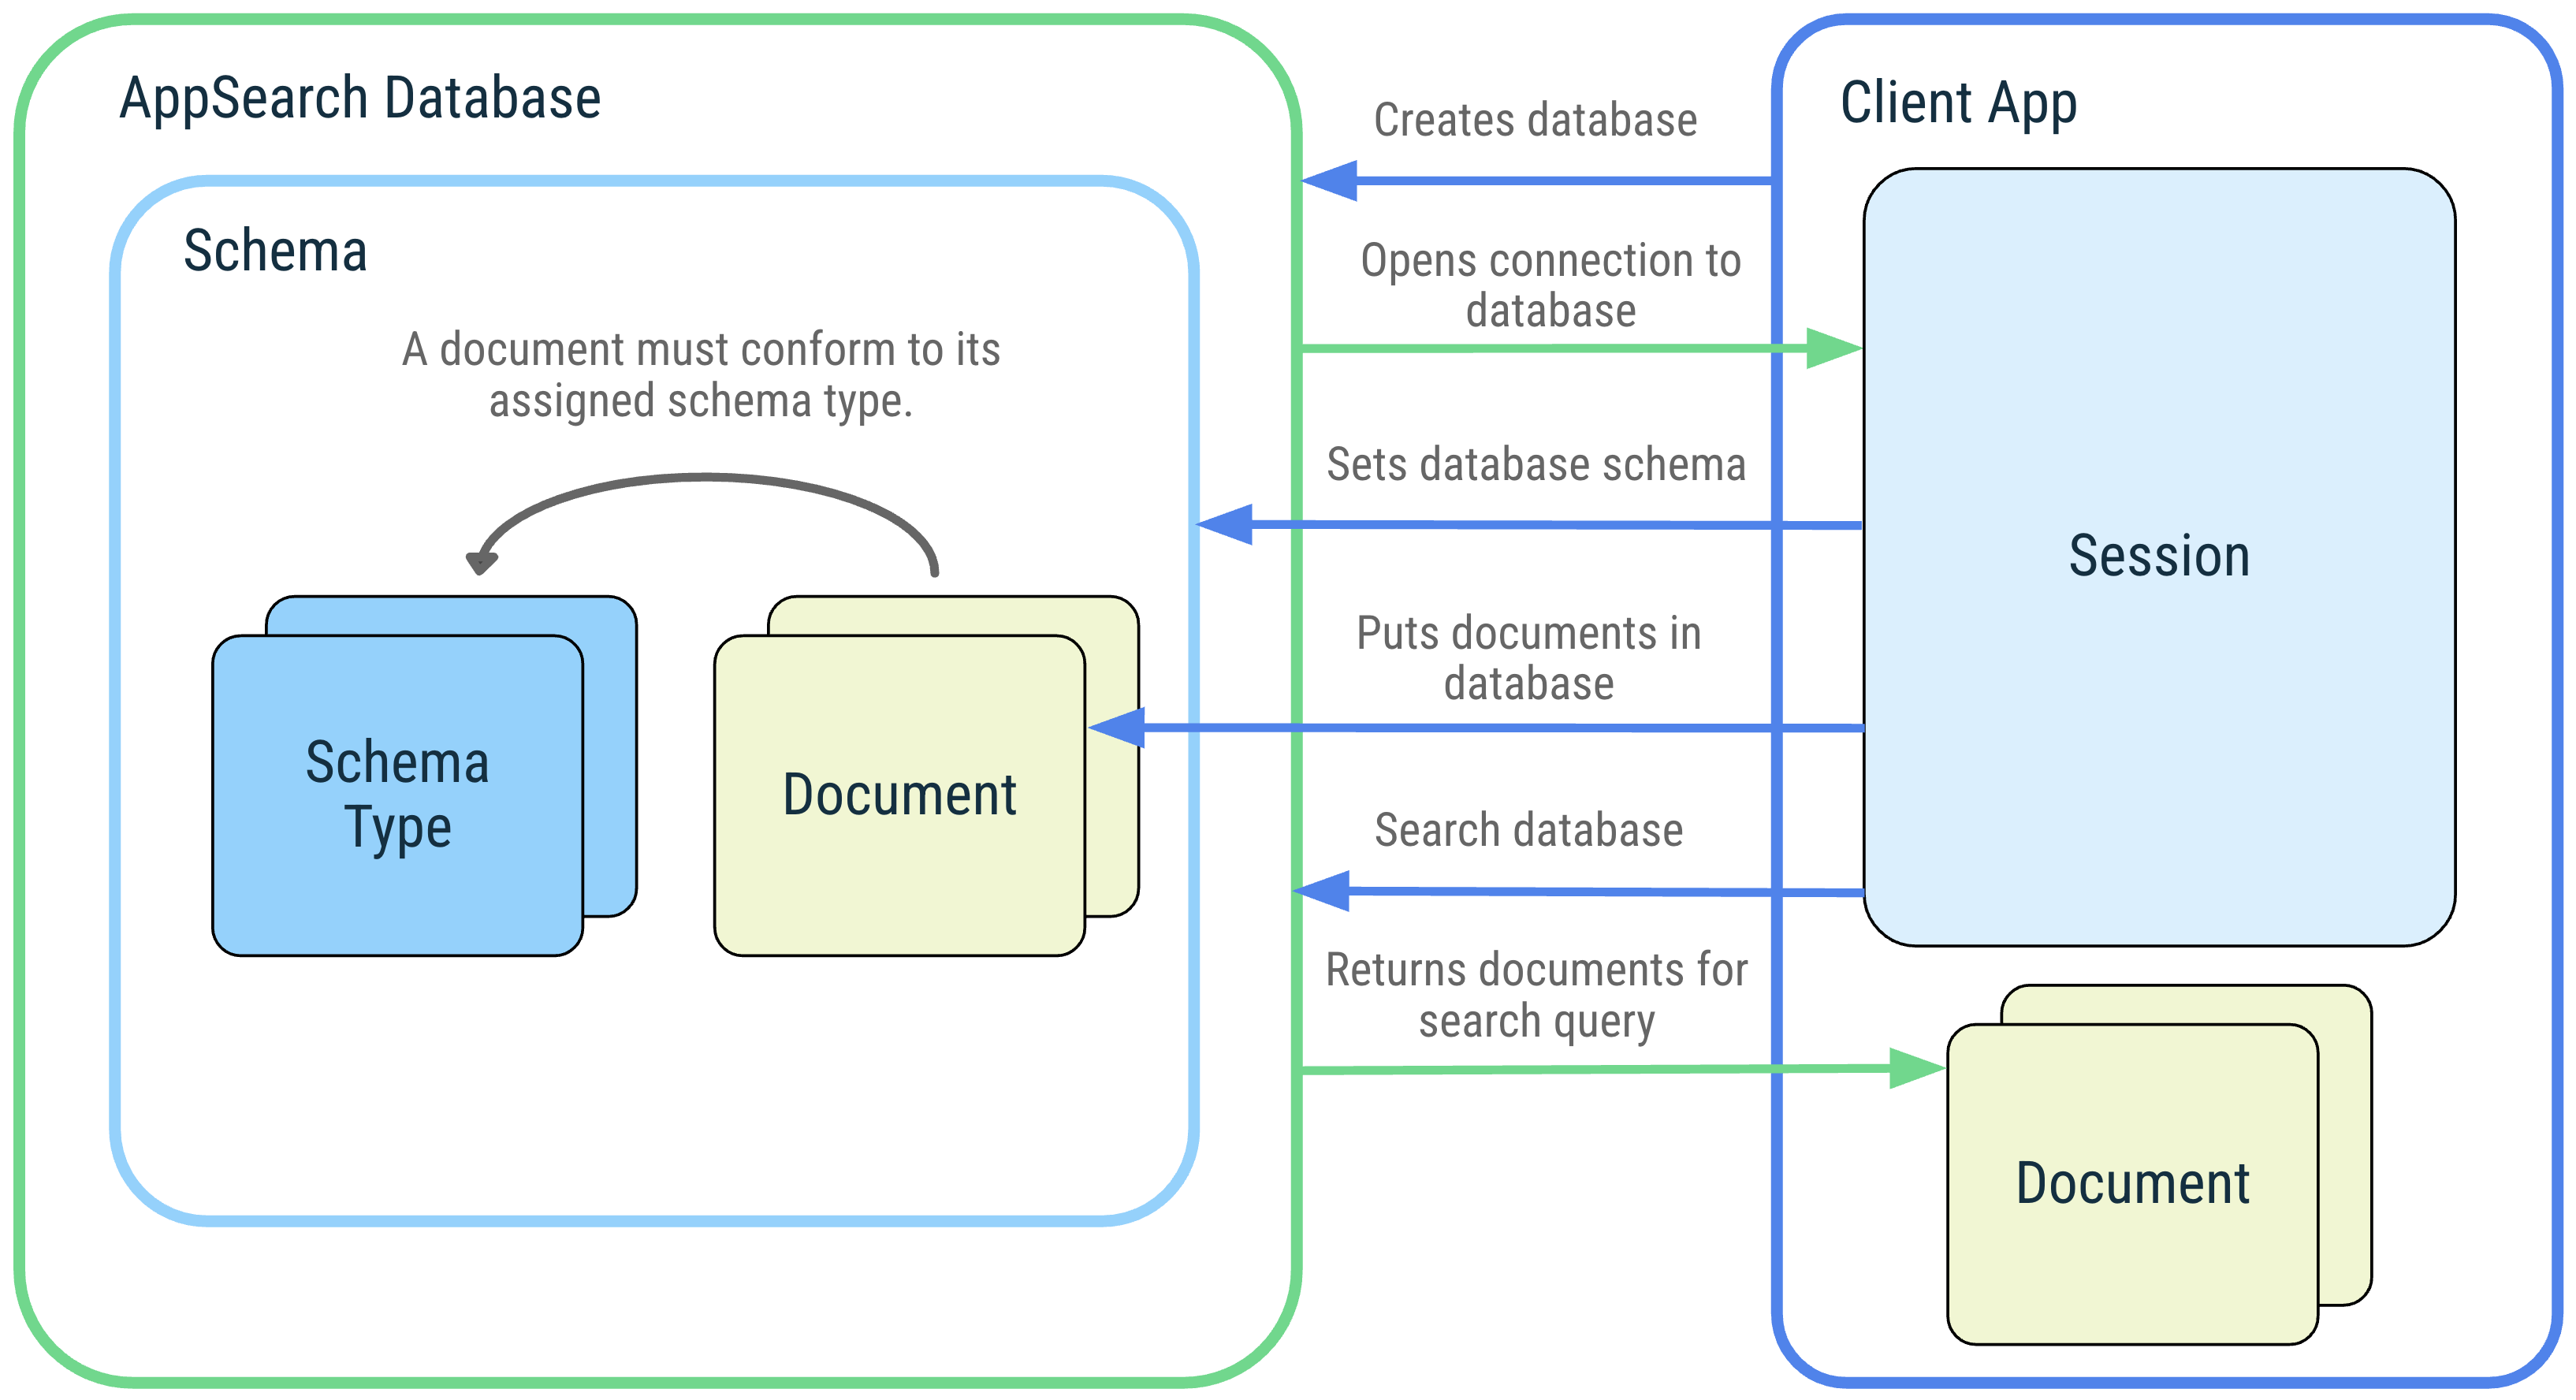 Garis besar diagram aplikasi klien dan interaksinya dengan konsep AppSearch berikut: Database AppSearch, skema, jenis skema, dokumen, sesi, dan penelusuran.